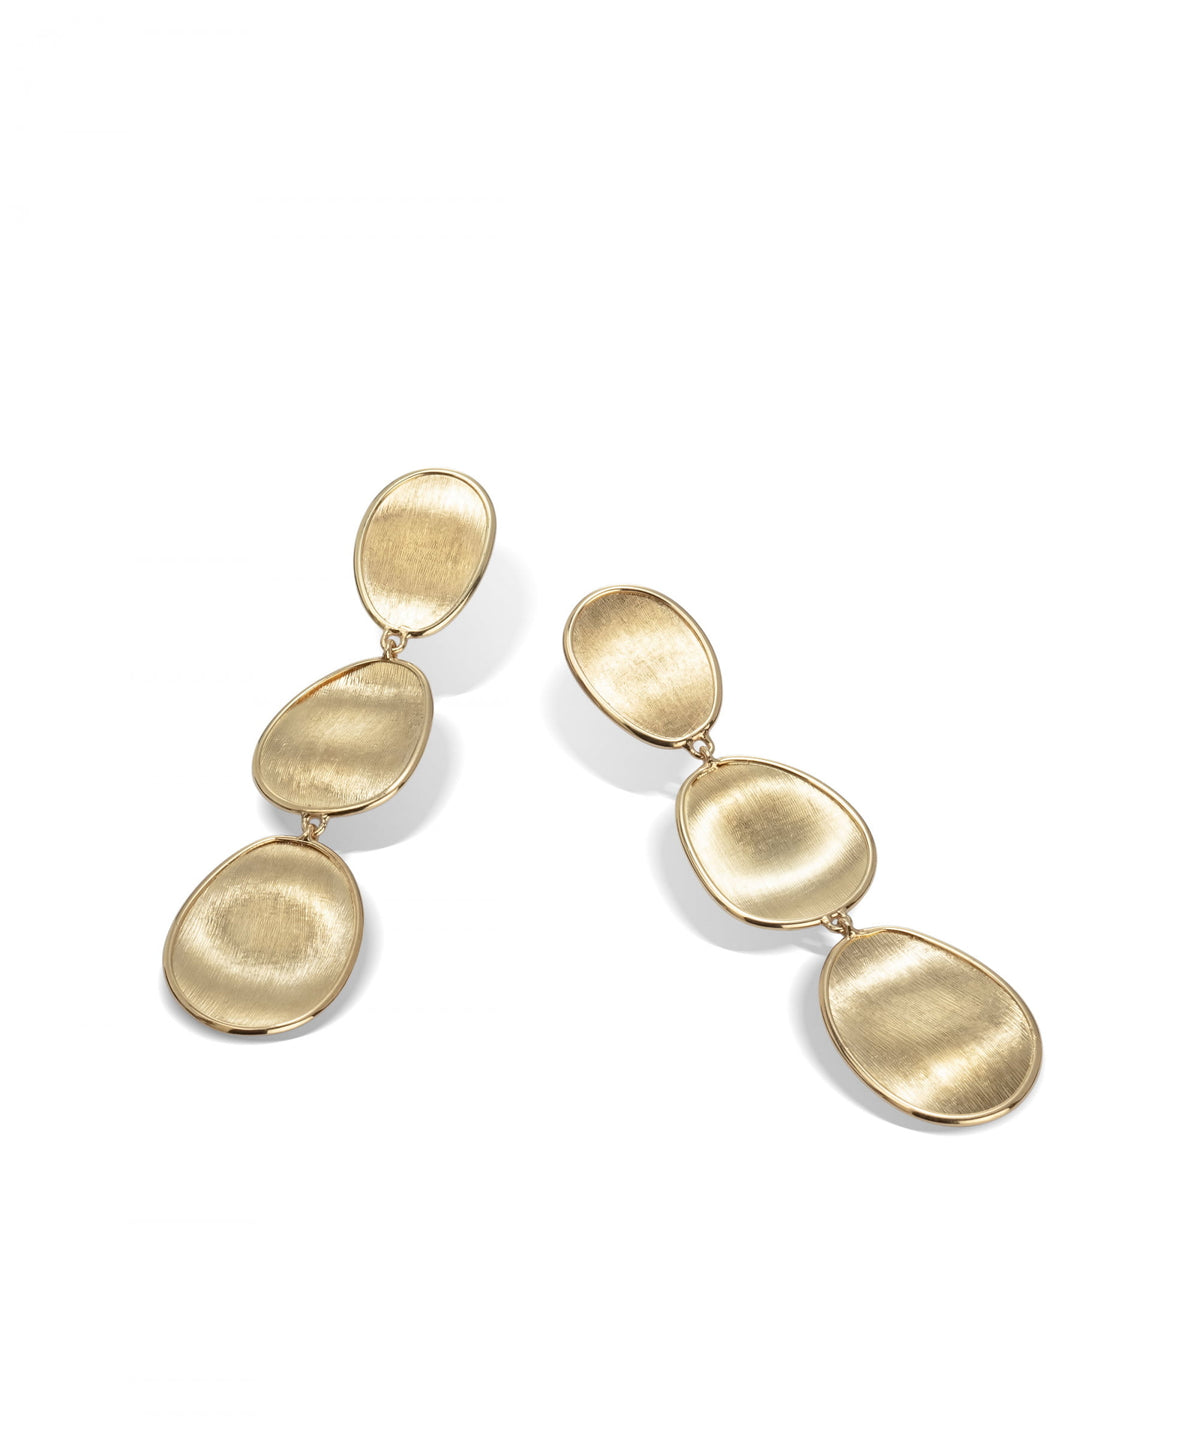 Lunaria Earrings in 18k Yellow Gold Triple Drop - Orsini Jewellers NZ